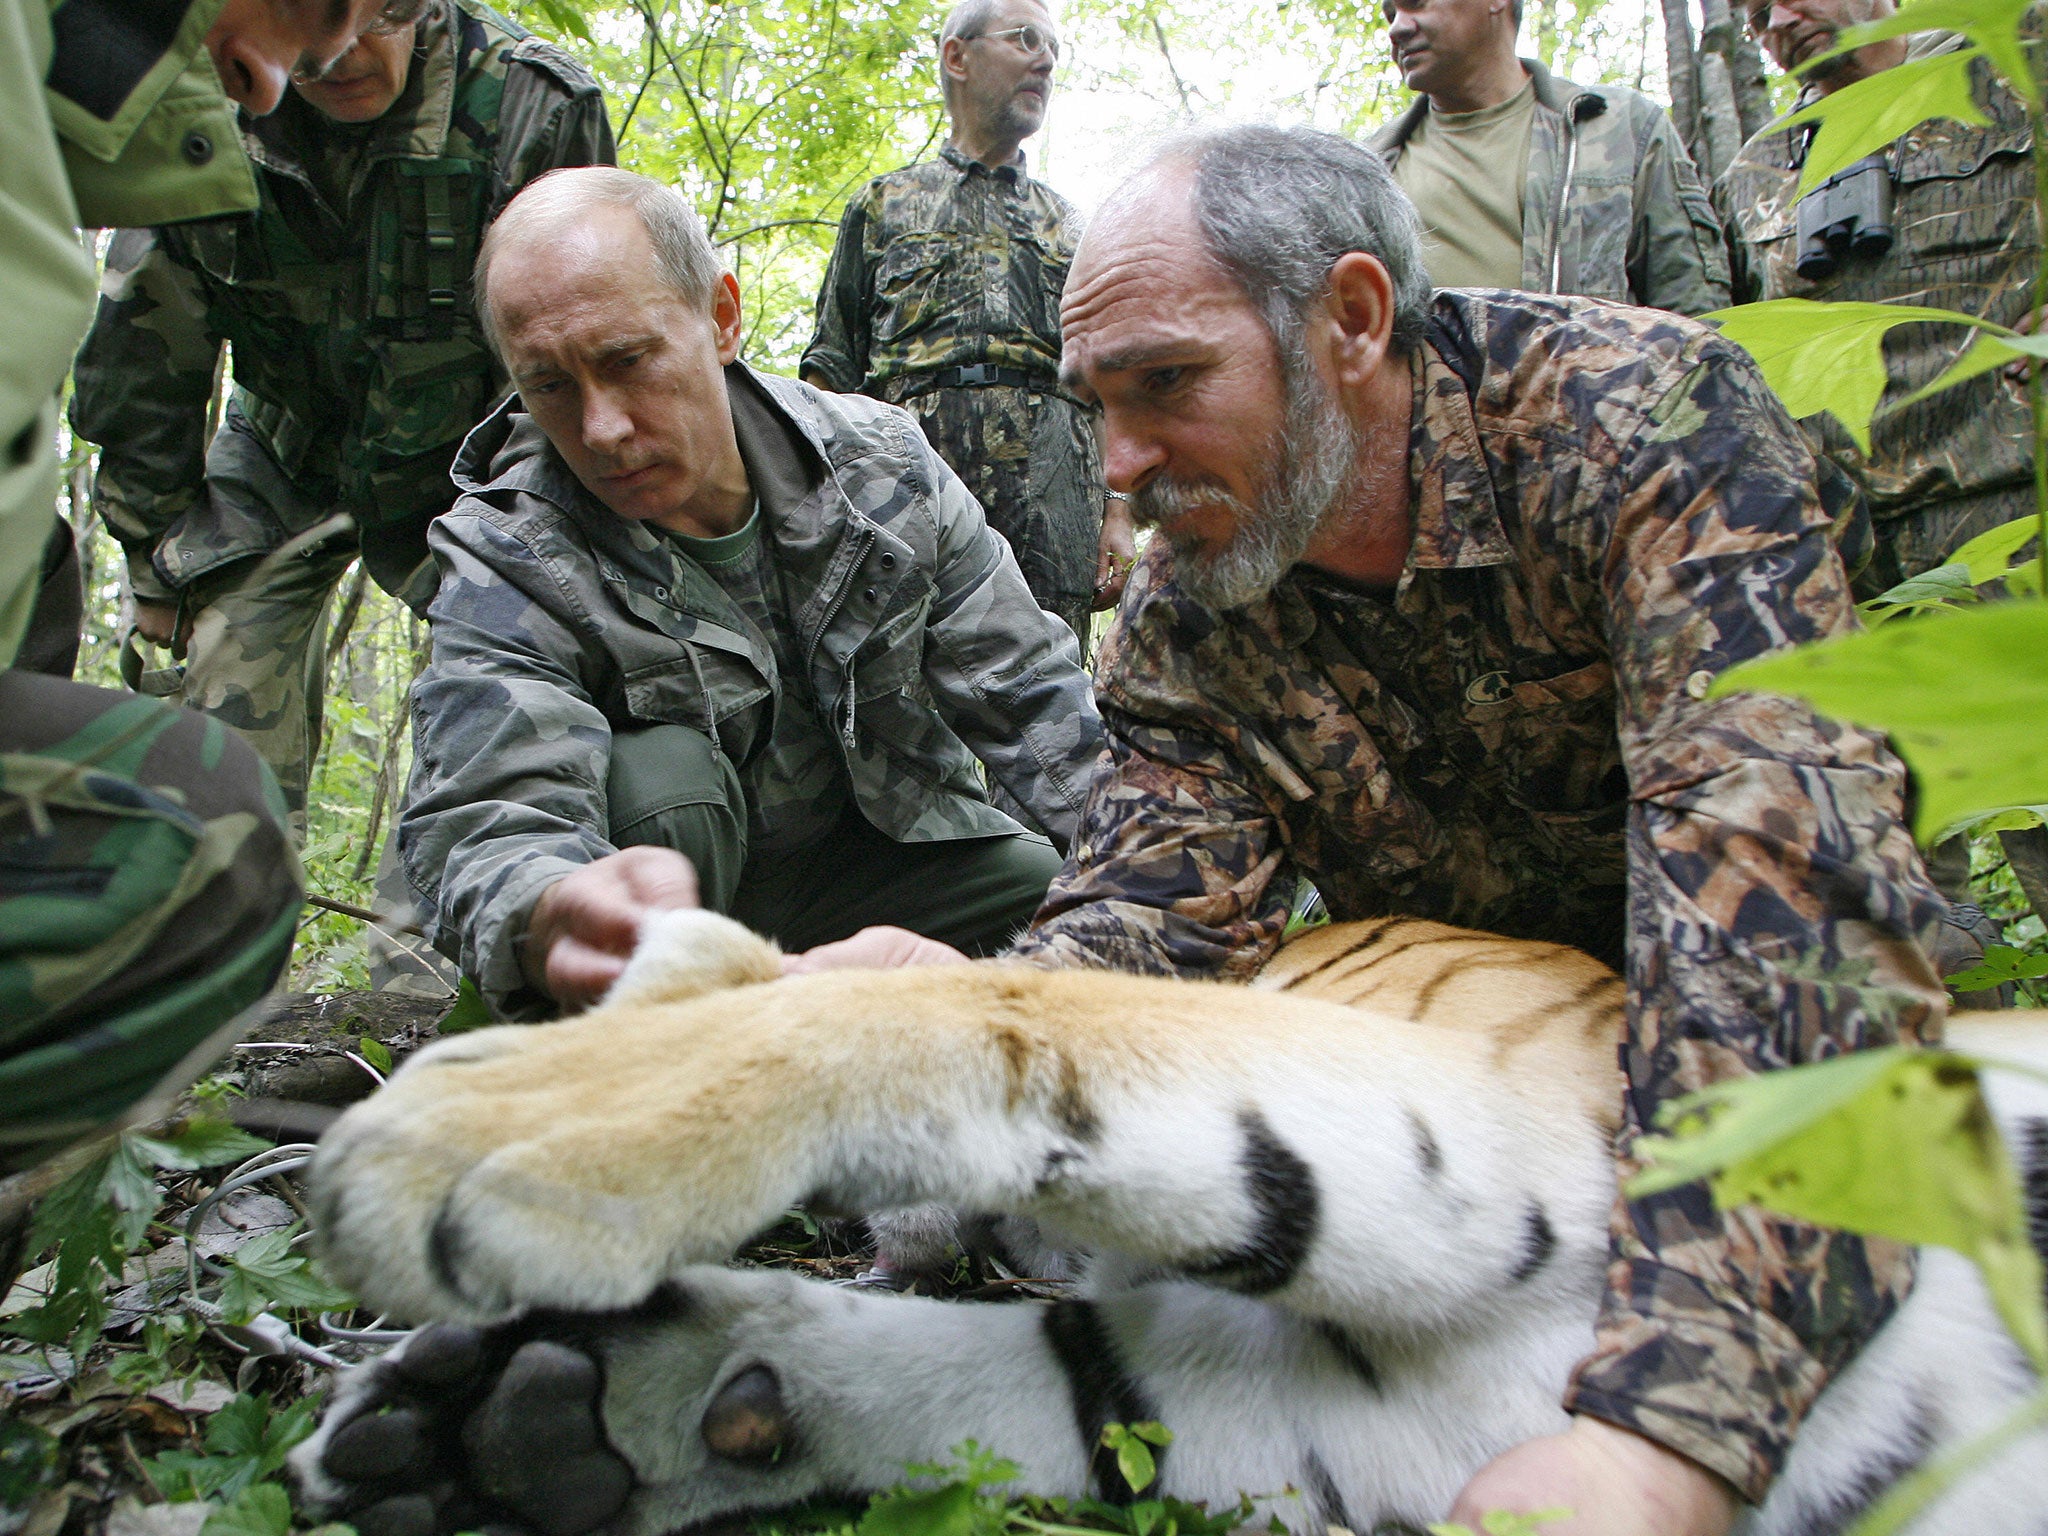 Vladimir Putin fixes a GPS satellite transmitter onto a tiger in 2008